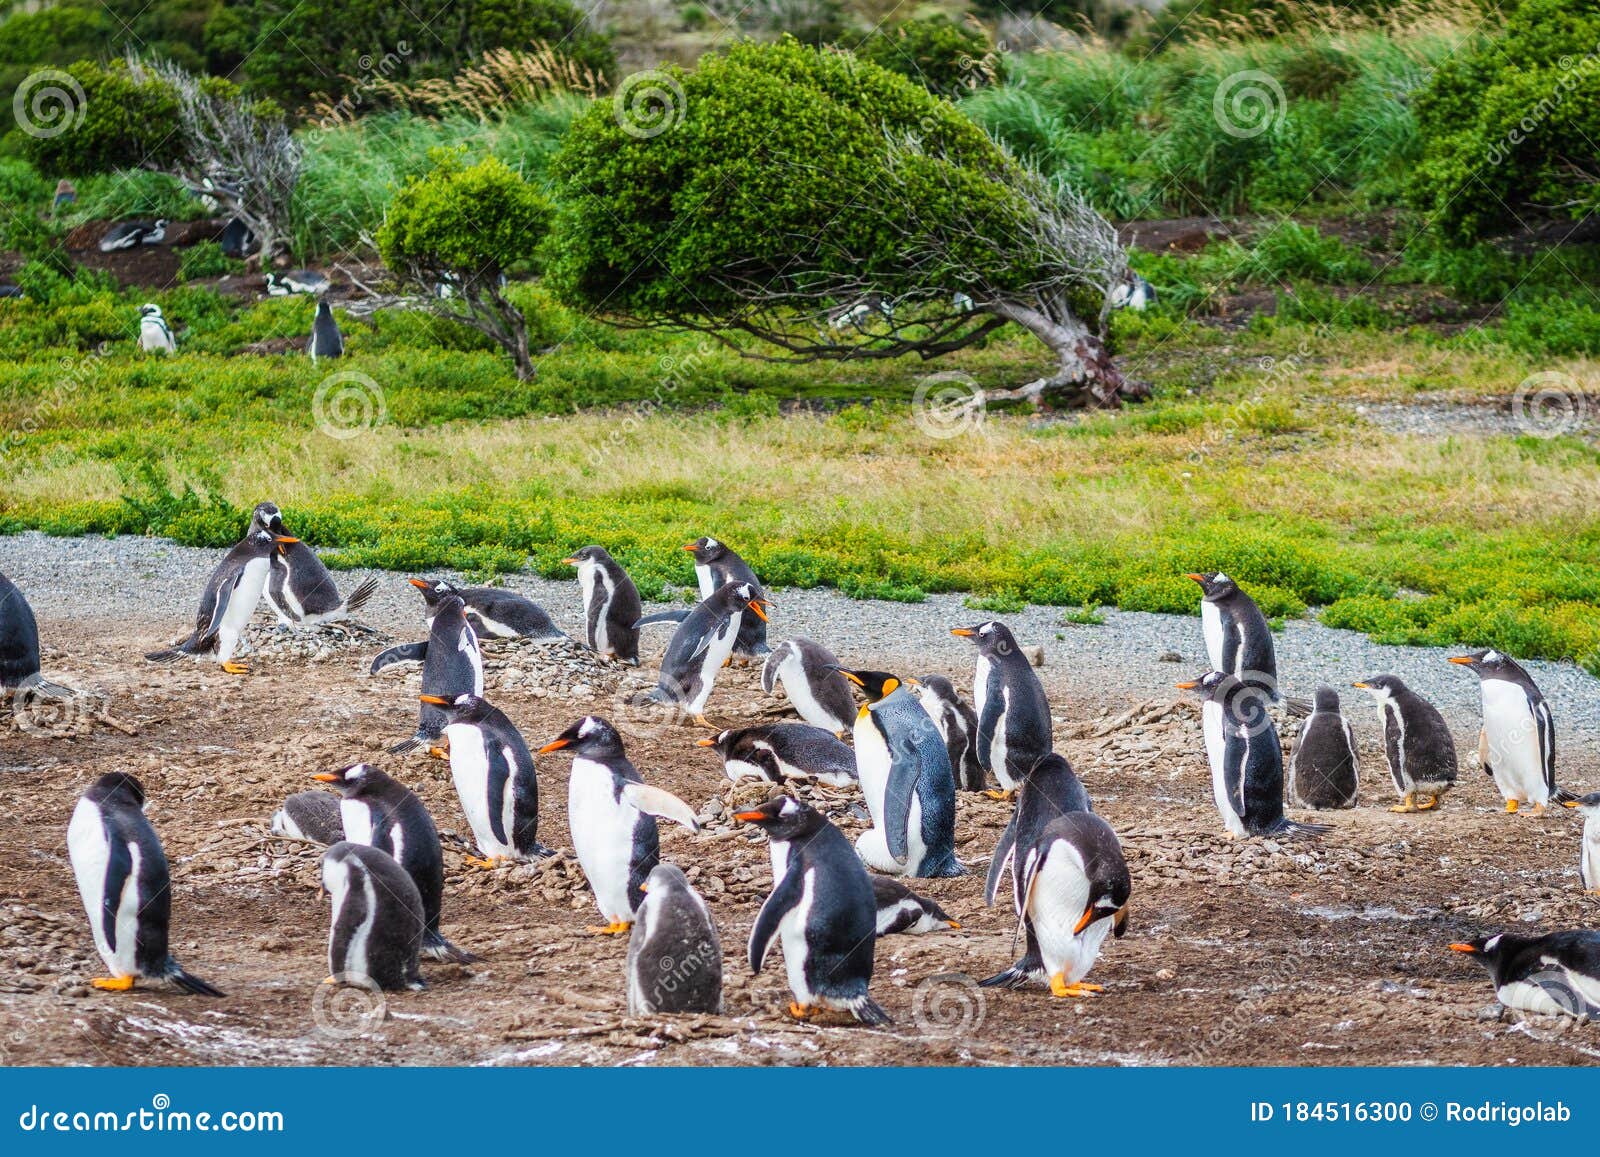 gentoo penguin colony on martillo island, beagle channel, ushuaia, tierra del fuego, argentina